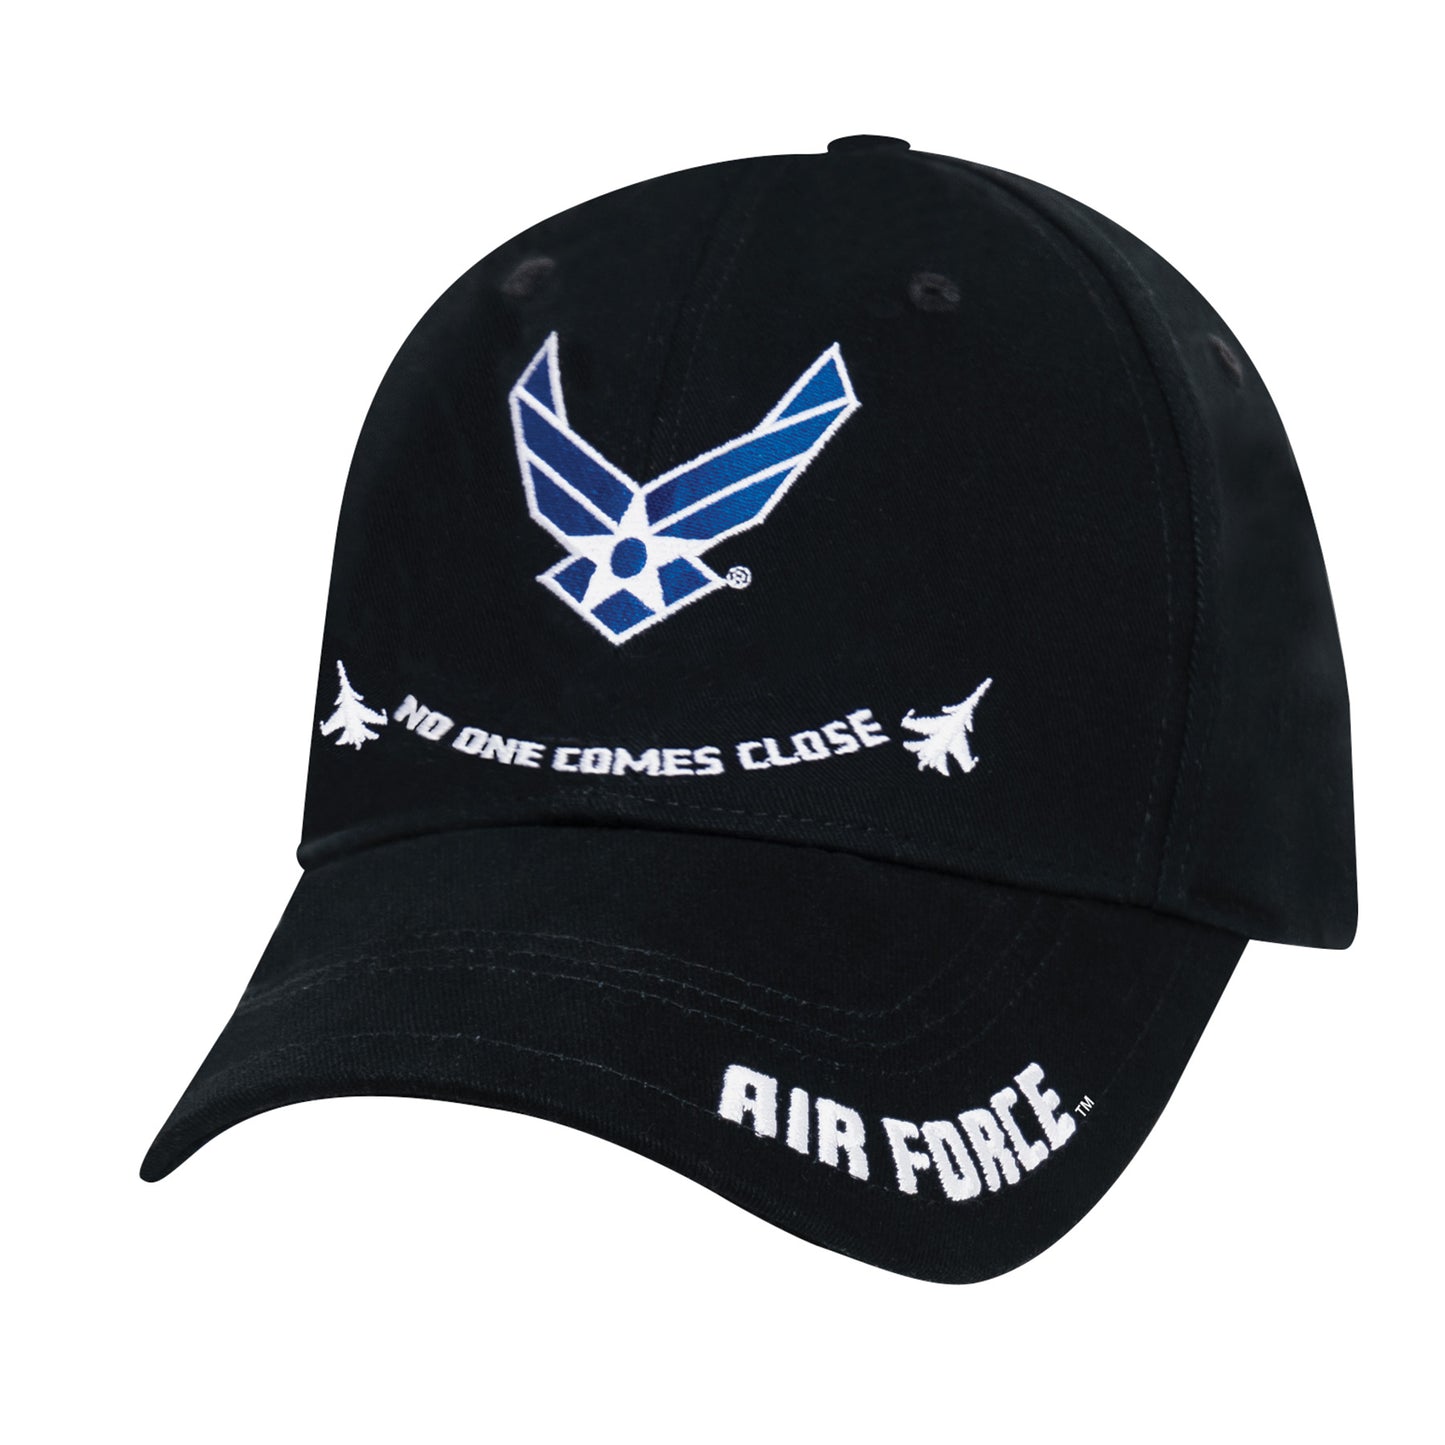 Rothco Air Force "No One Comes Close" Black Adjustable Baseball Cap